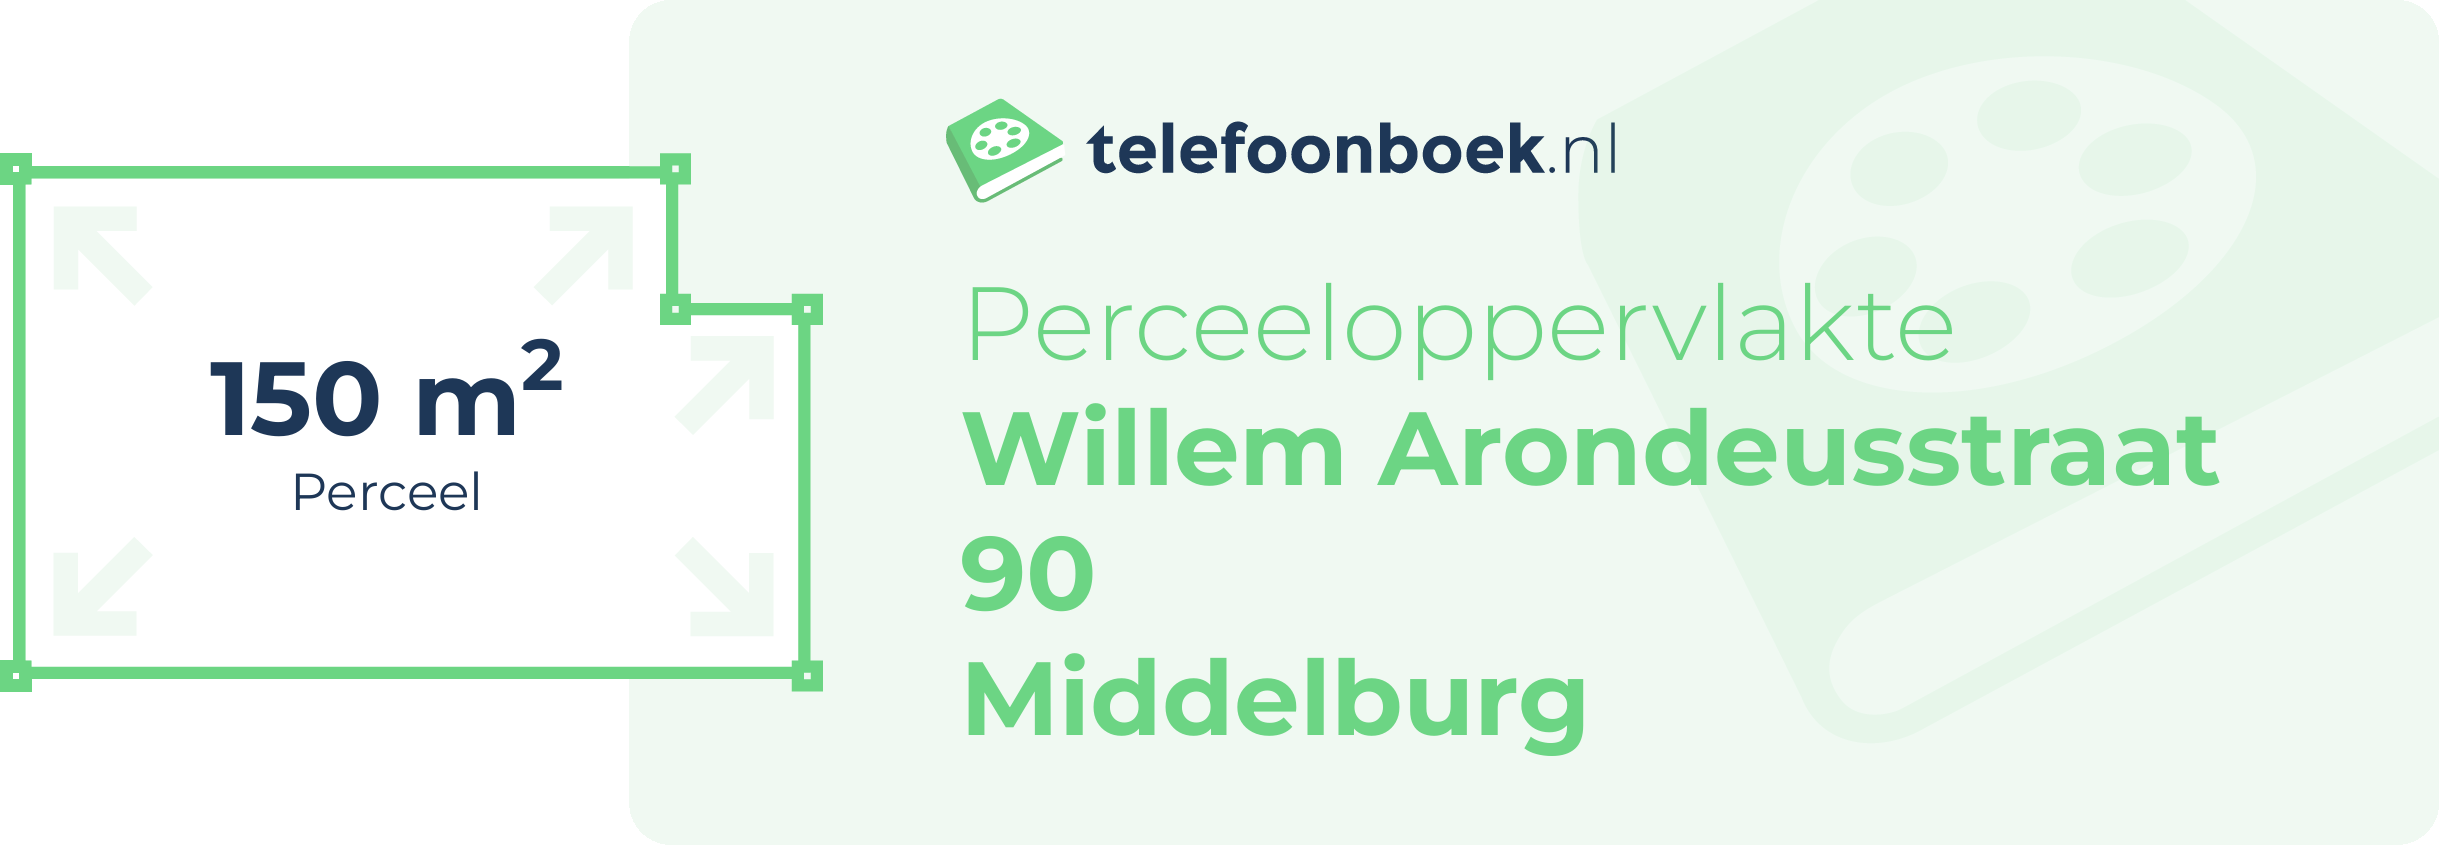 Perceeloppervlakte Willem Arondeusstraat 90 Middelburg